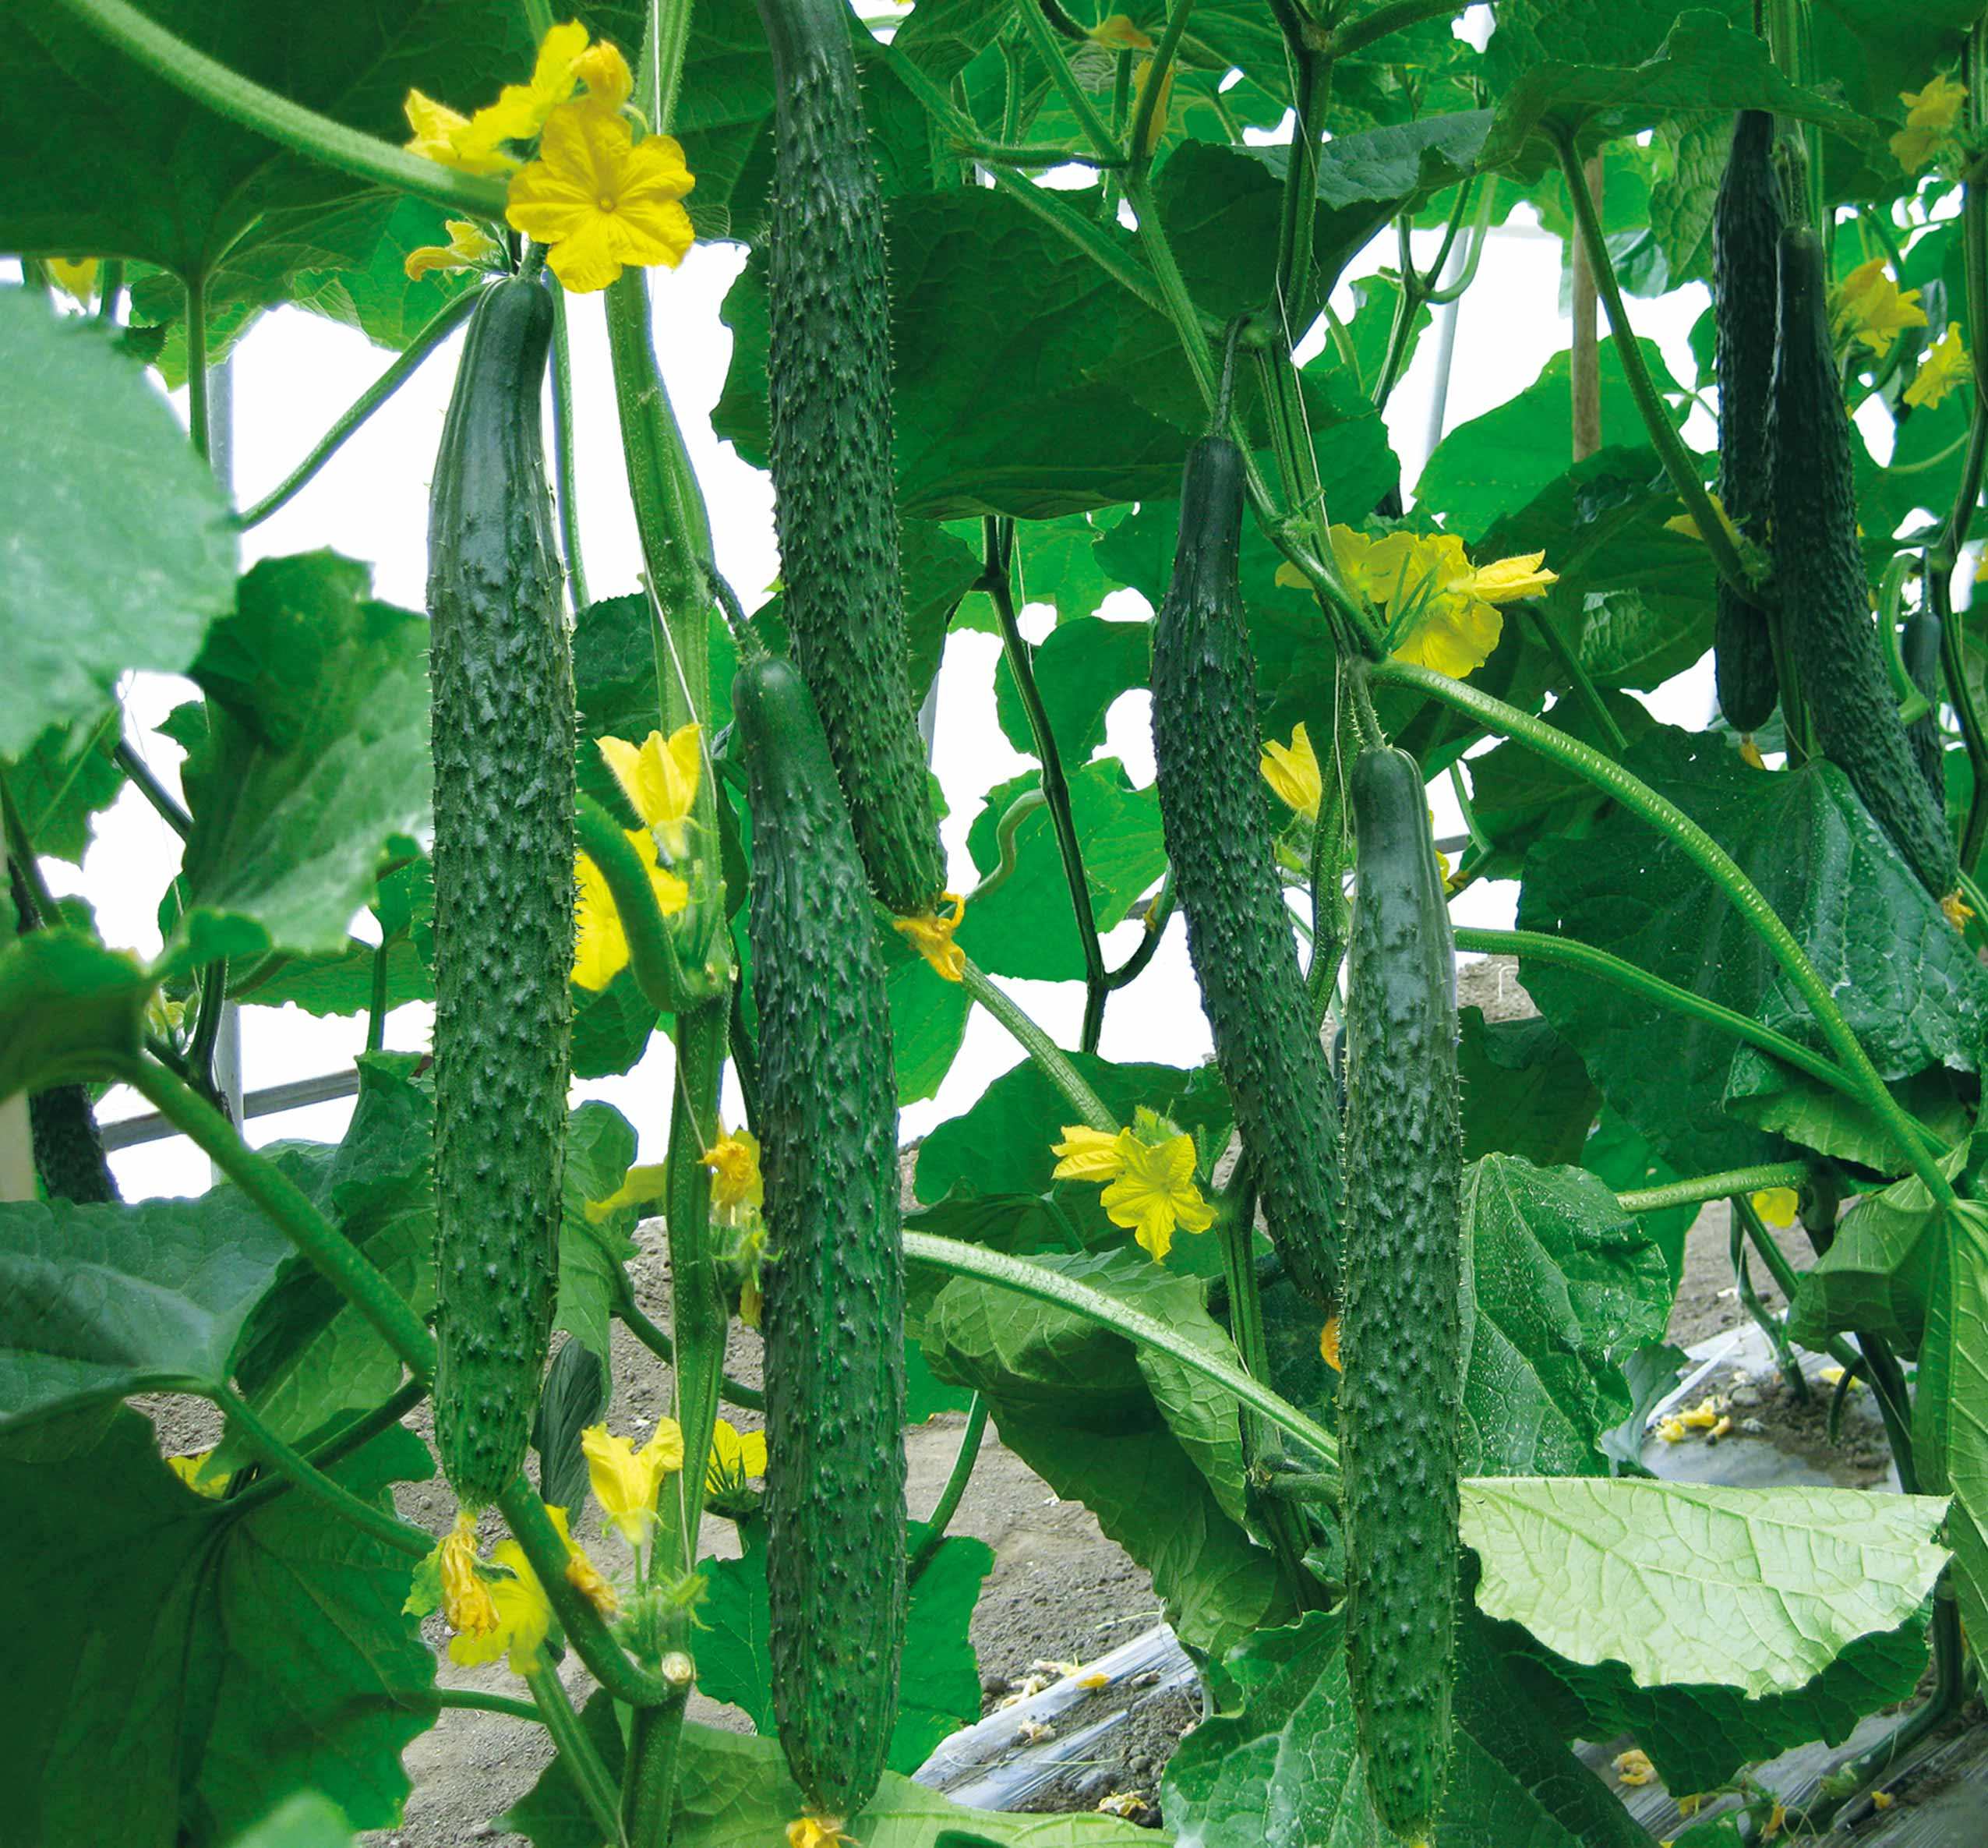 【好碧施】黄瓜施用生物有机肥后增值10400元,且叶色深绿,瓜直,商品性